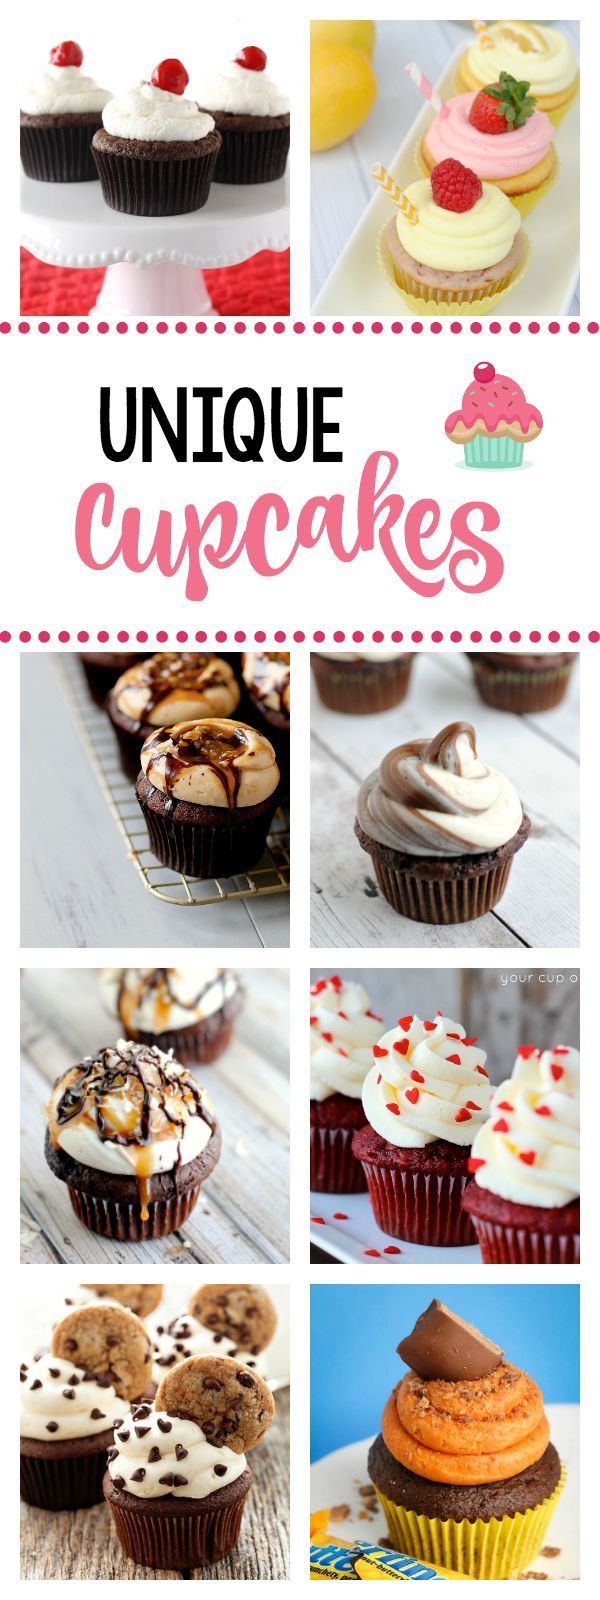 25 Amazing Cupcake Recipes -   21 unique cupcake recipes
 ideas